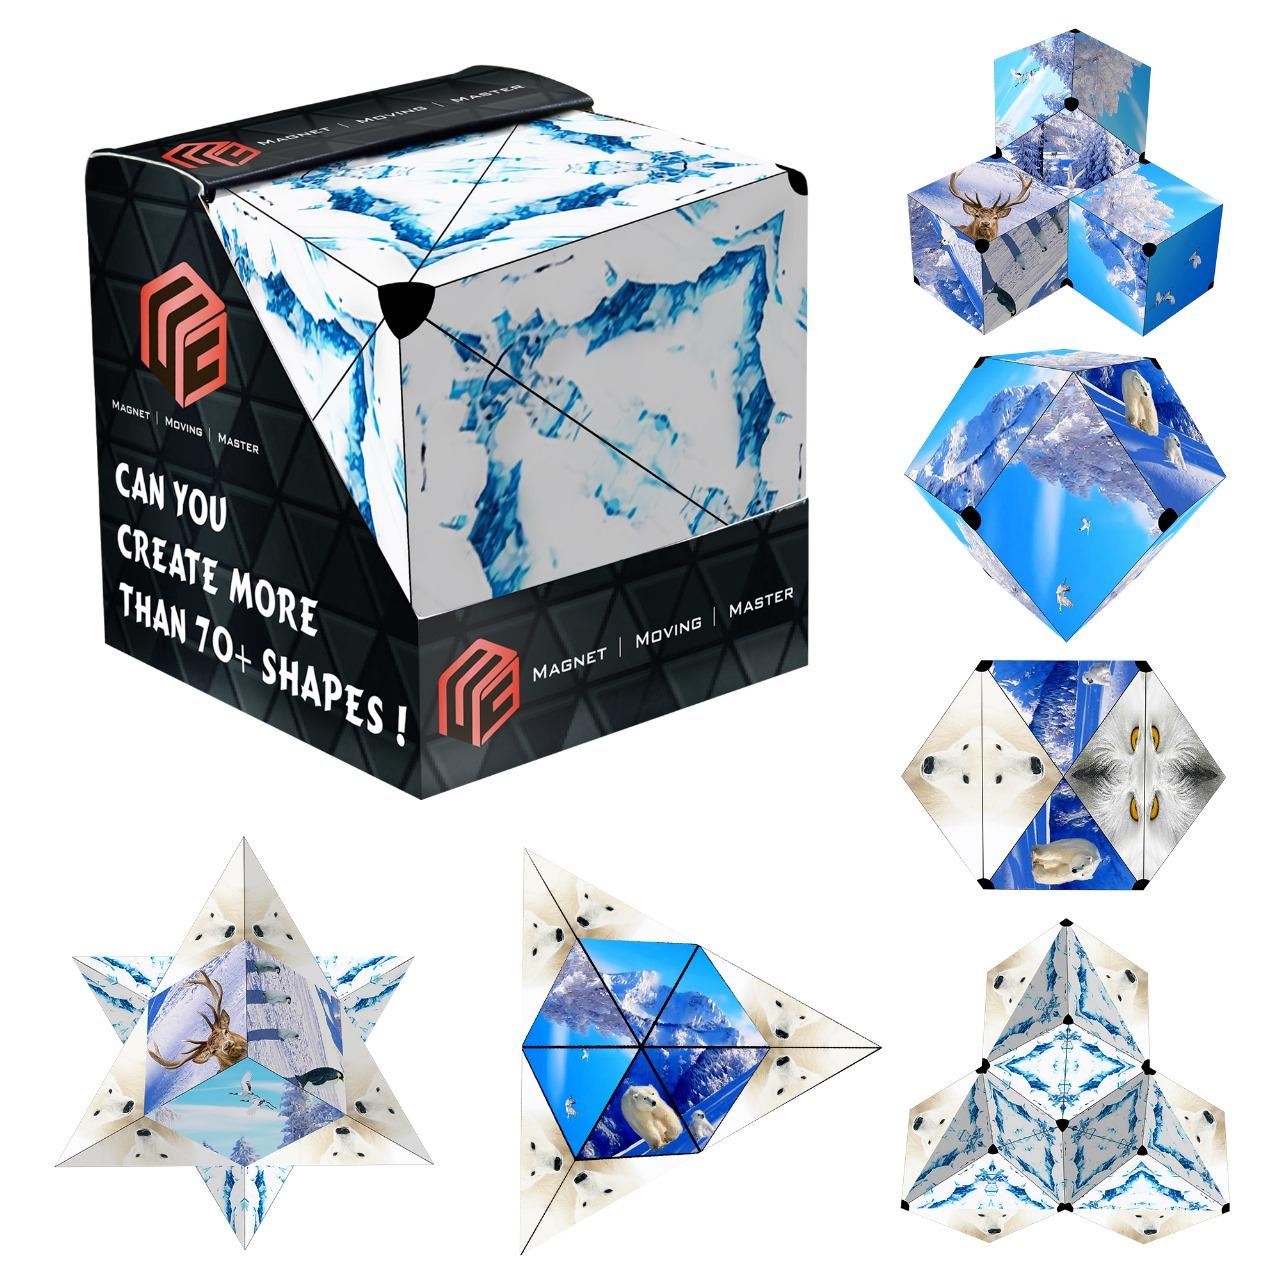 3D Cube Shape Shifting Box